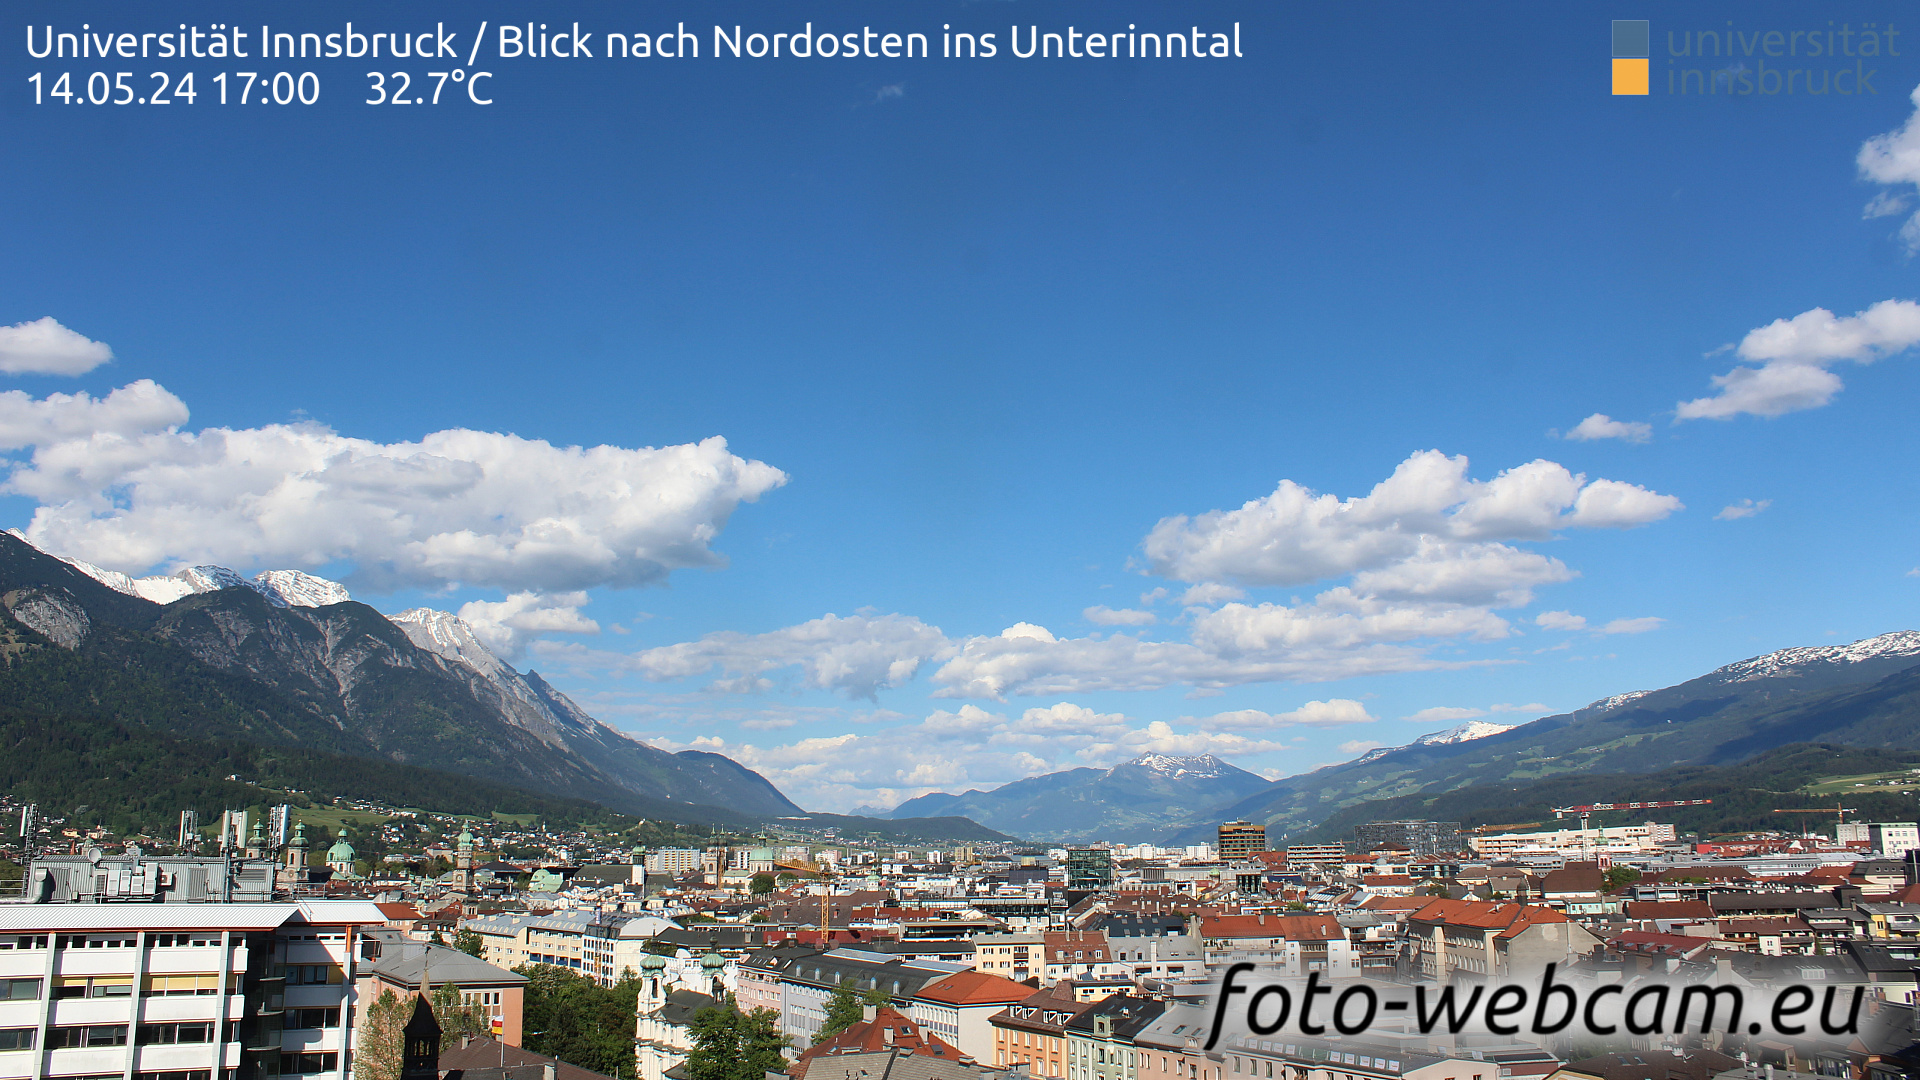 Innsbruck Thu. 17:06